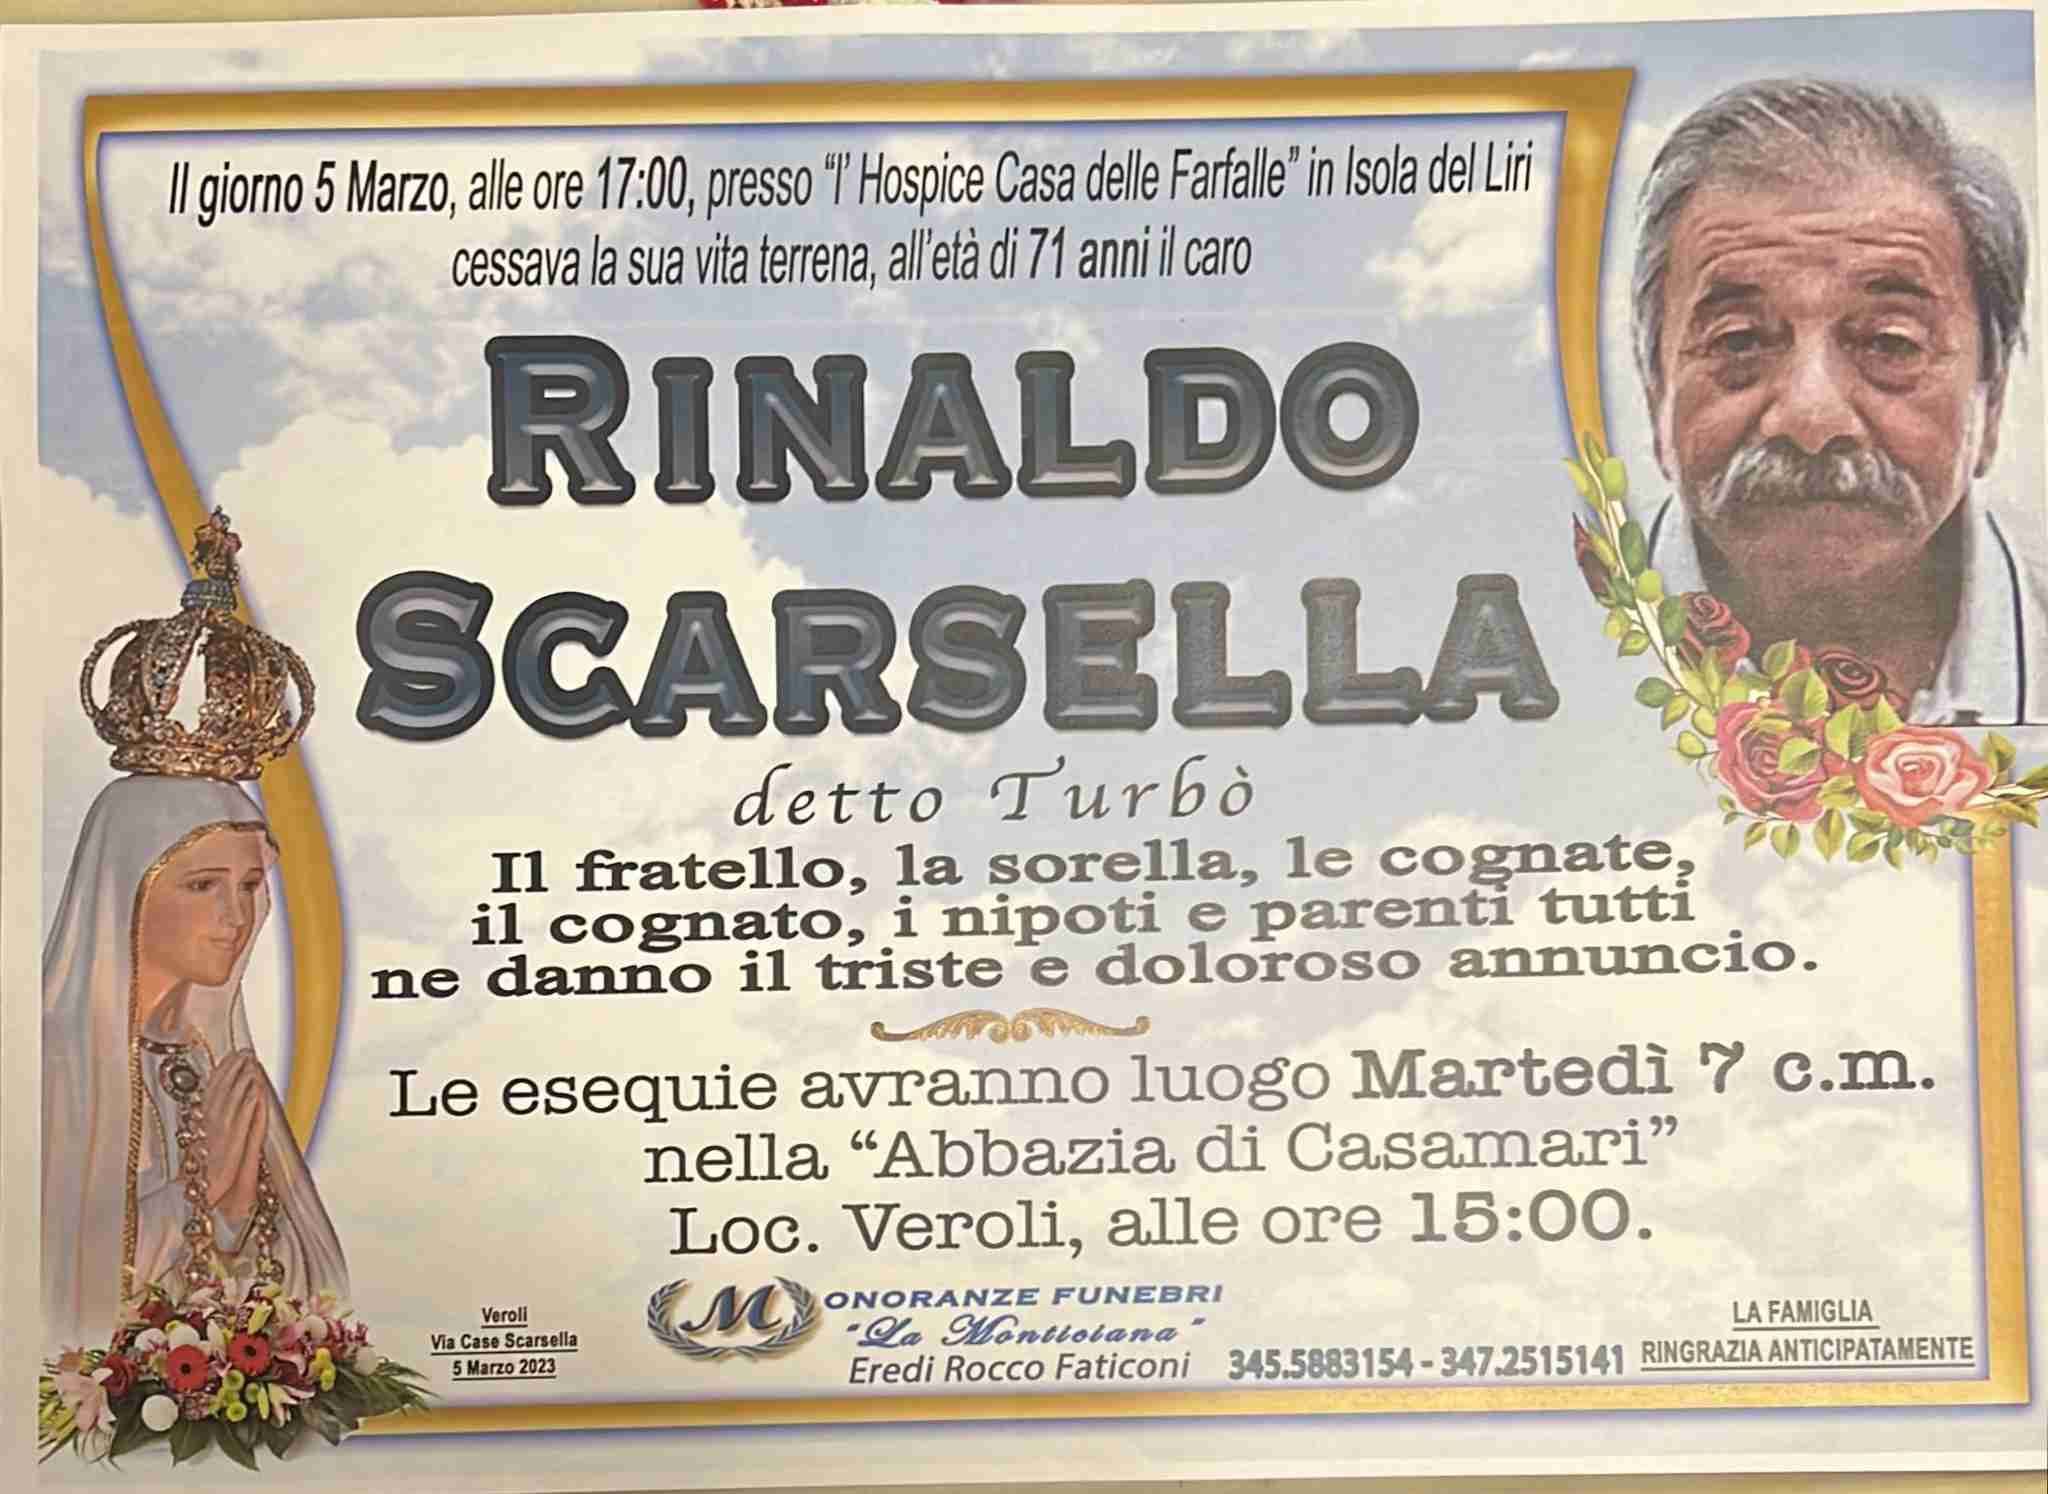 Rinaldo Scarsella